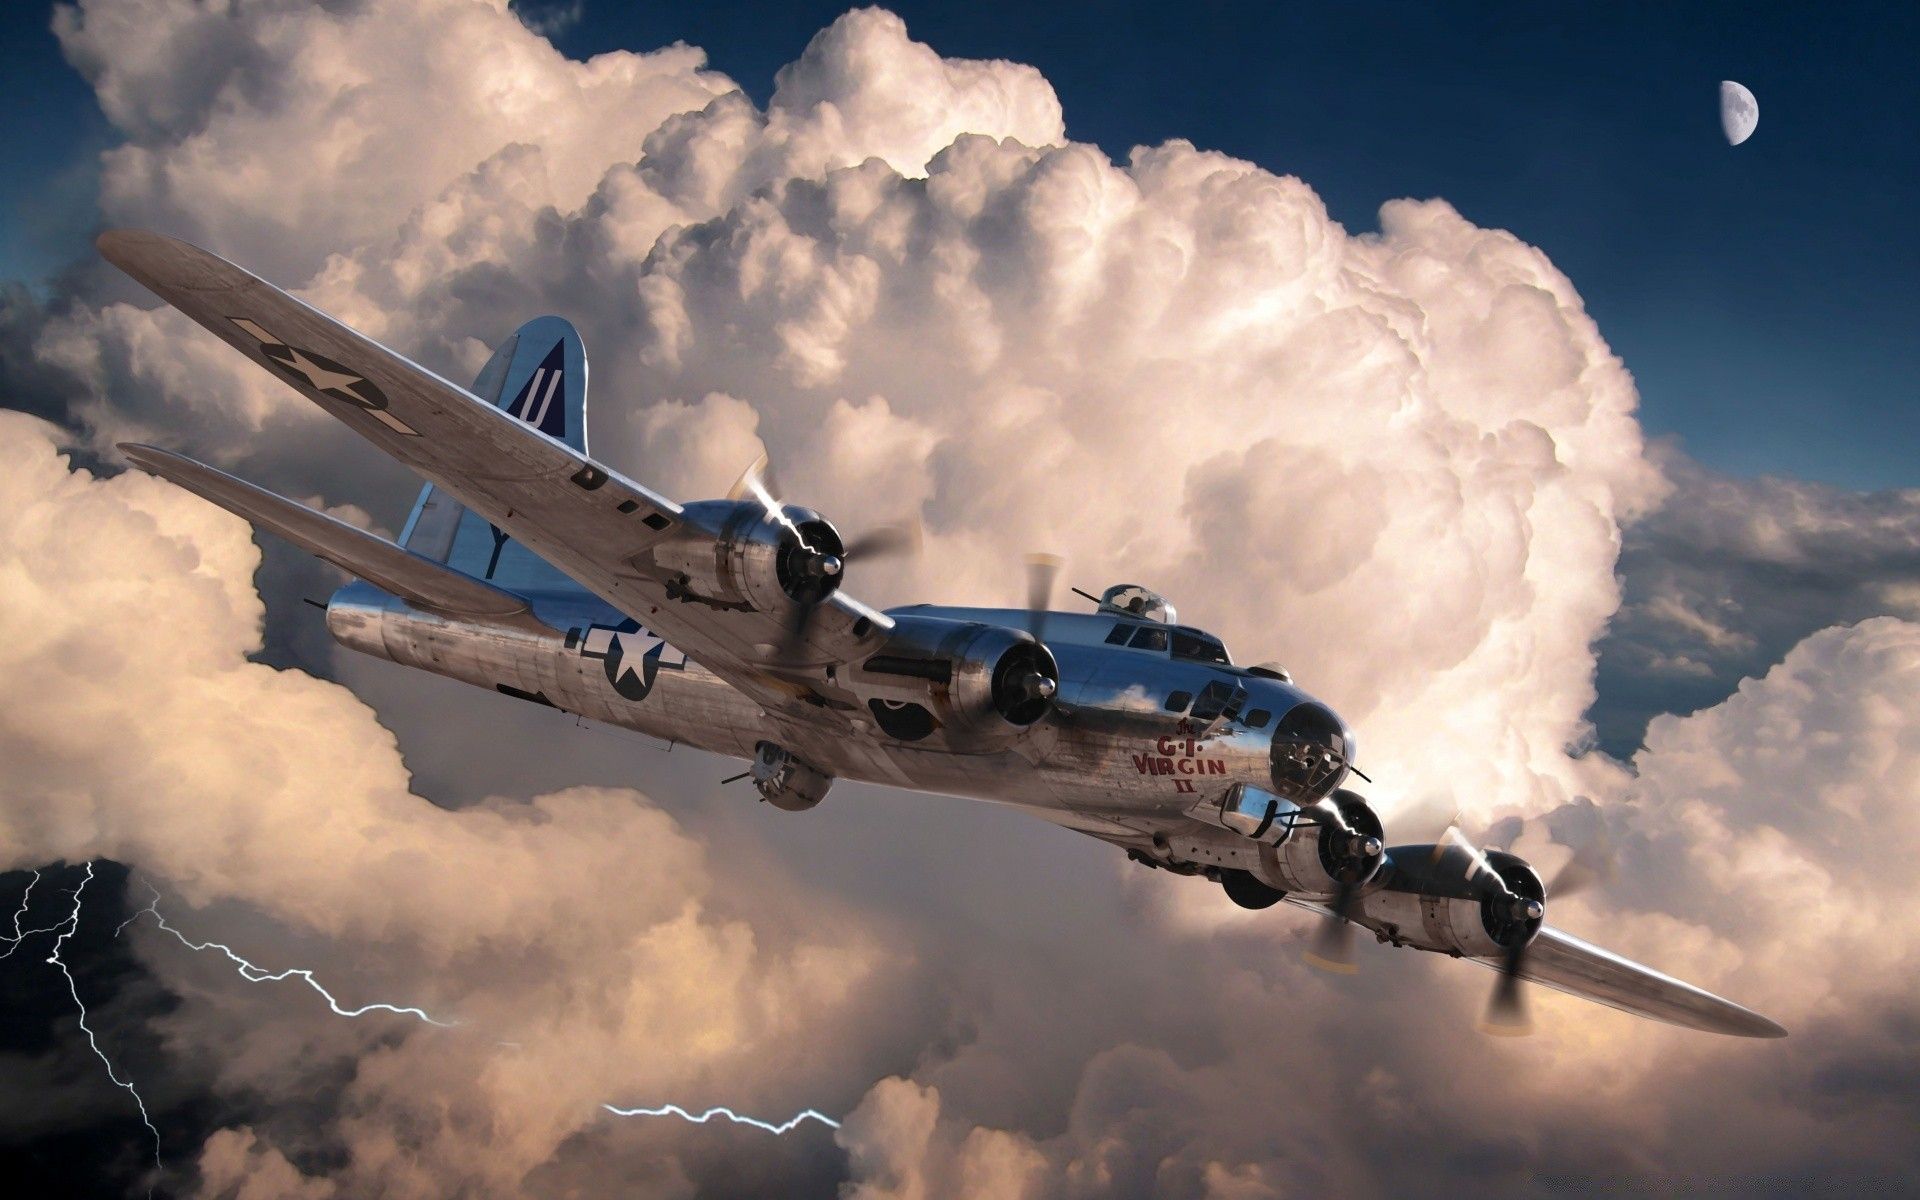 عکس شگفت انگیز هواپیمای قدیمی در آسمان با رعدوبرق